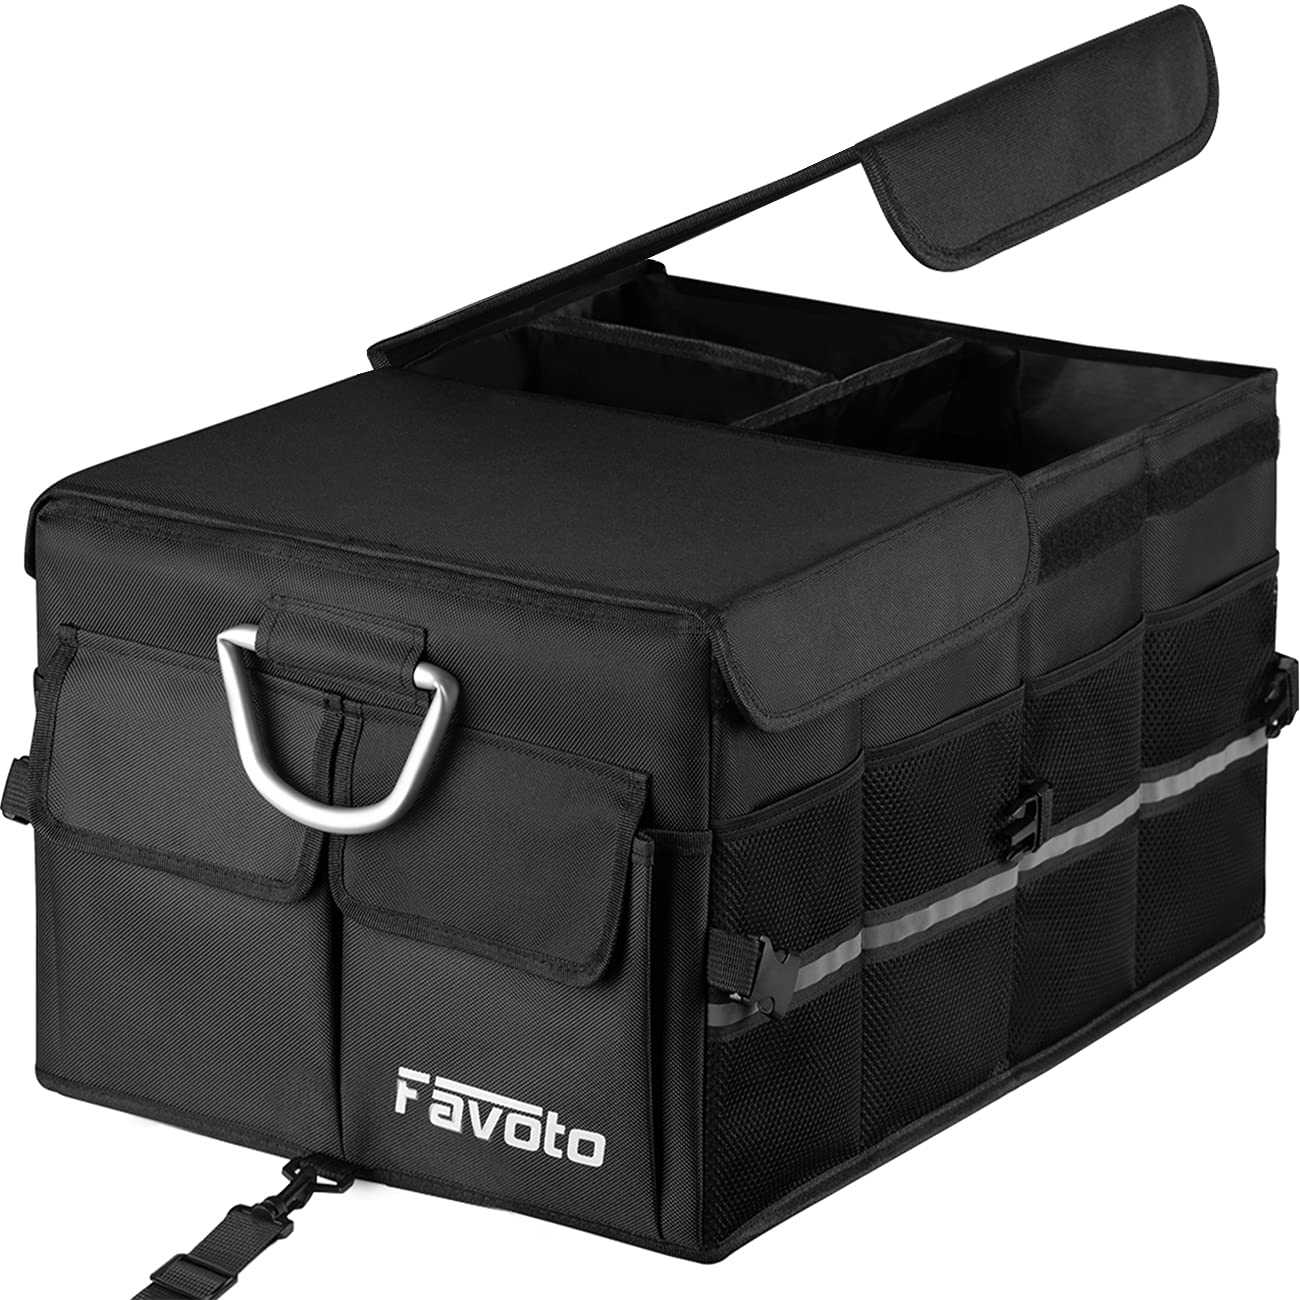 Favoto Auto Kofferraumbox Klappbox Kofferraum Organizer Kofferraumtasche Wasserfest Robust Oxford-Material Autotasche Box für Limousine SUV Schrägheck Schwarz（52cm x 32.5cm x 28cm） von Favoto